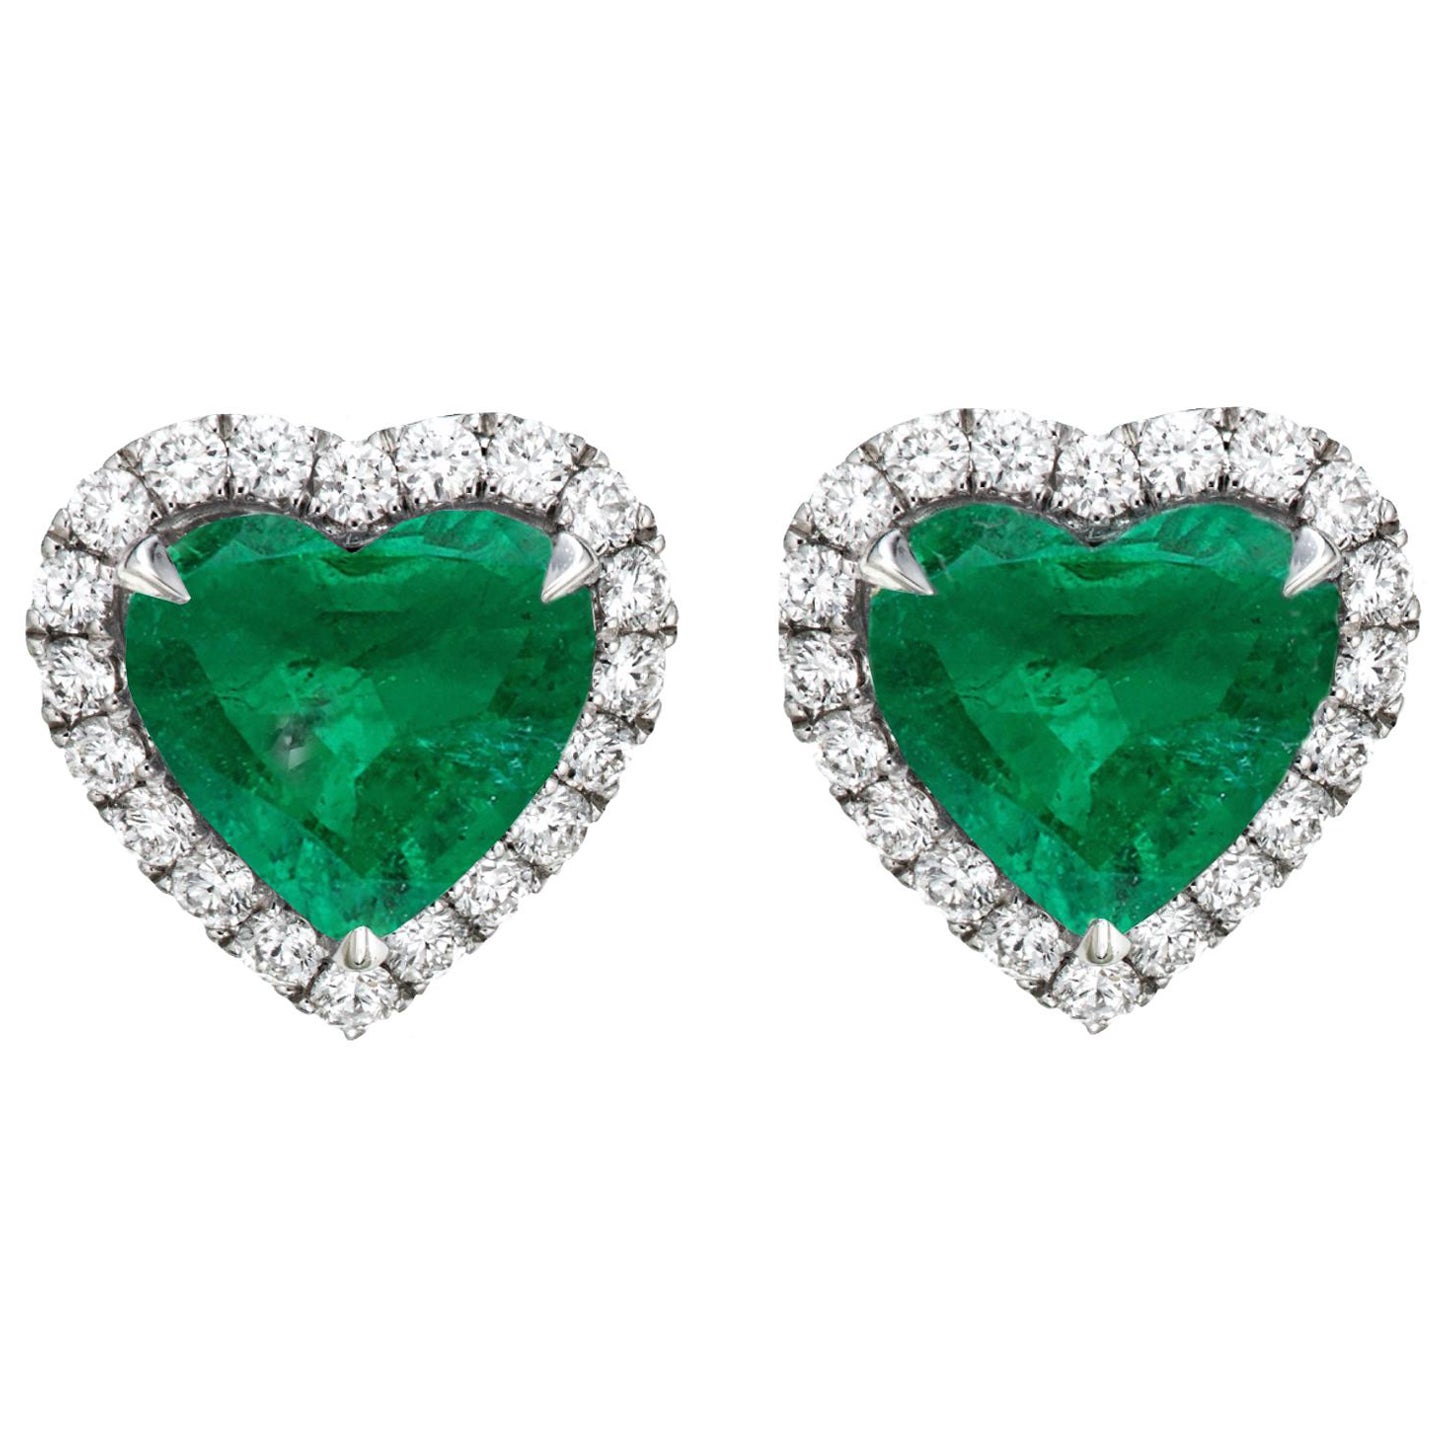 Certified 4 Carat Heart Shape Green Emerald Studs